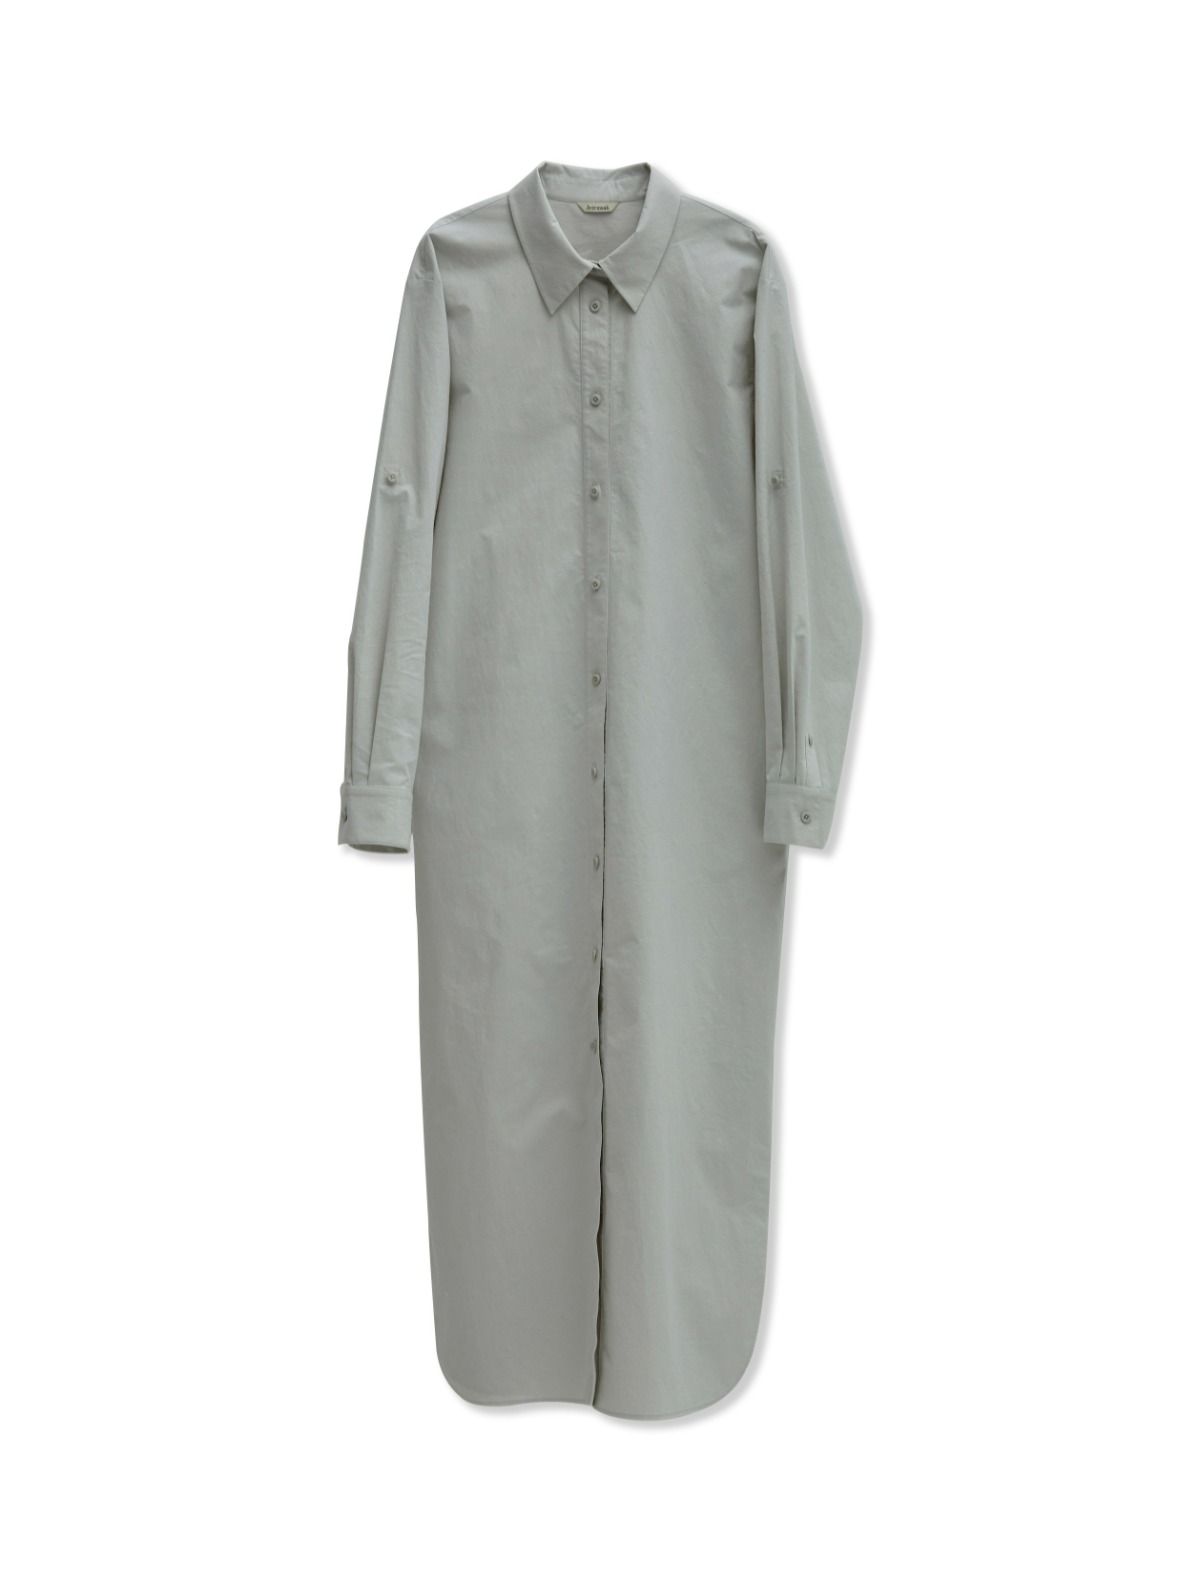 Roll-Up Sleeve Shirt Dress (Light Gray)